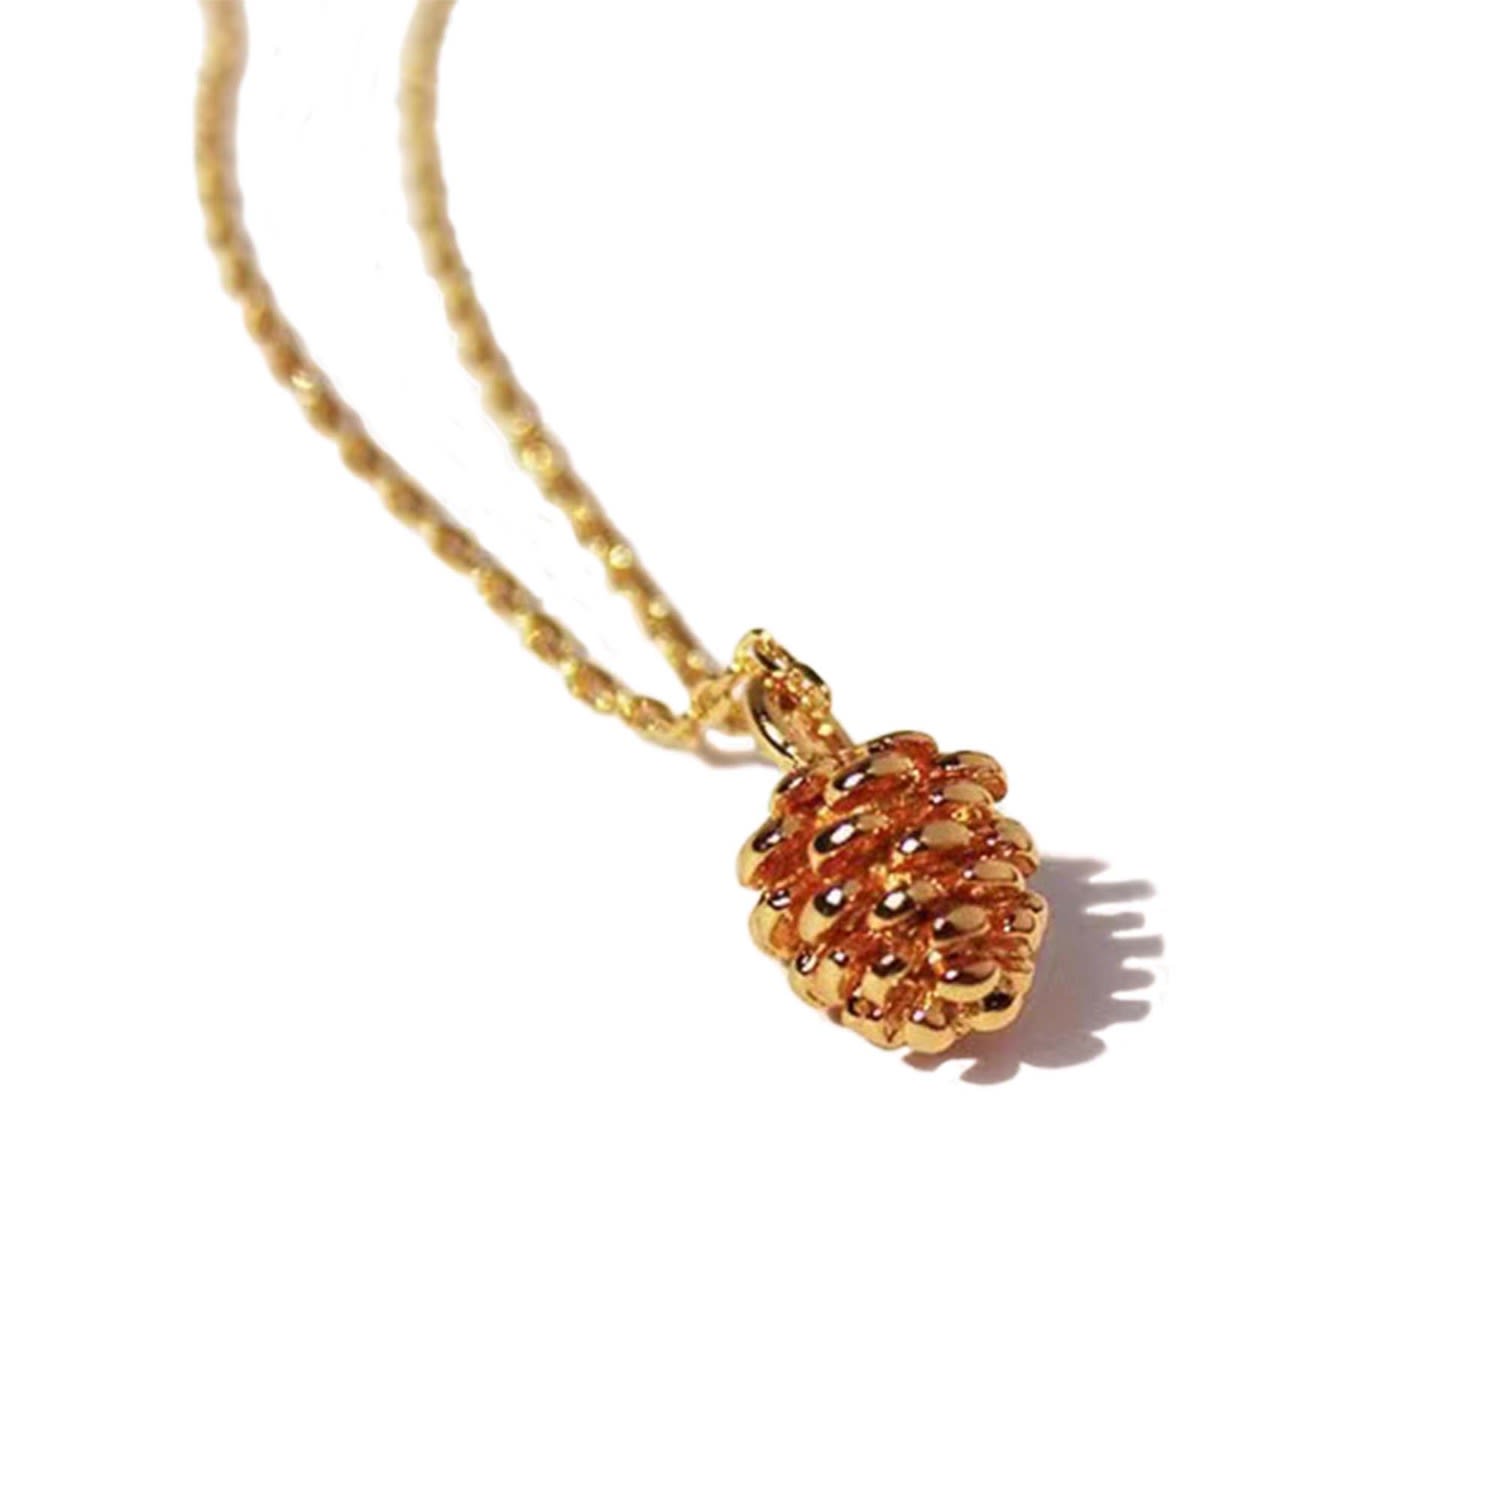 Shop Classicharms Women's Gold Pinecone Pendant Necklace